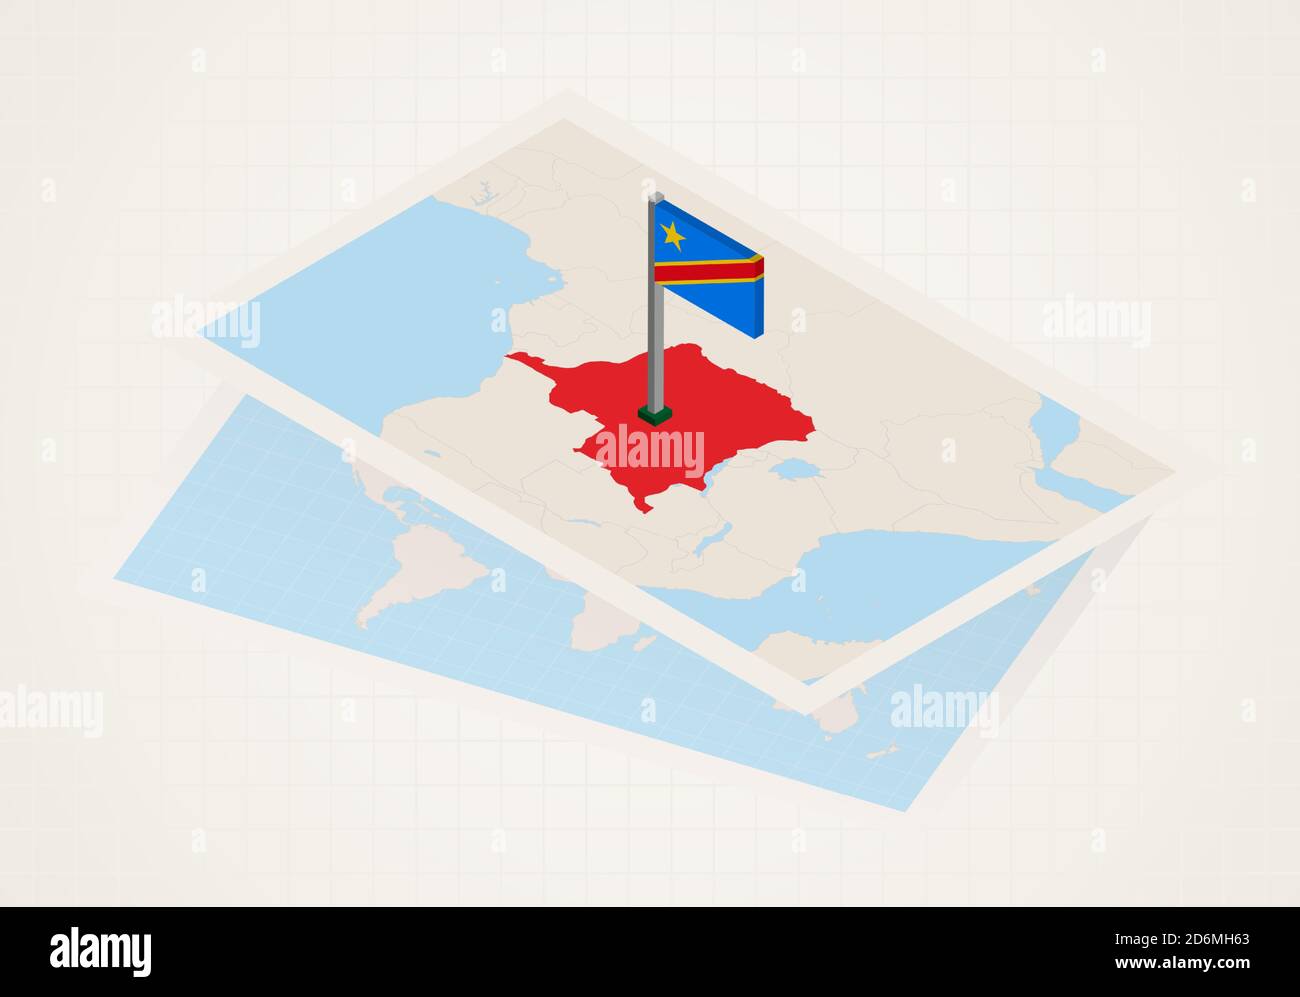 Dr Congo sélectionné sur la carte avec le drapeau 3D de la RDC. Carte de papier vectoriel. Illustration de Vecteur